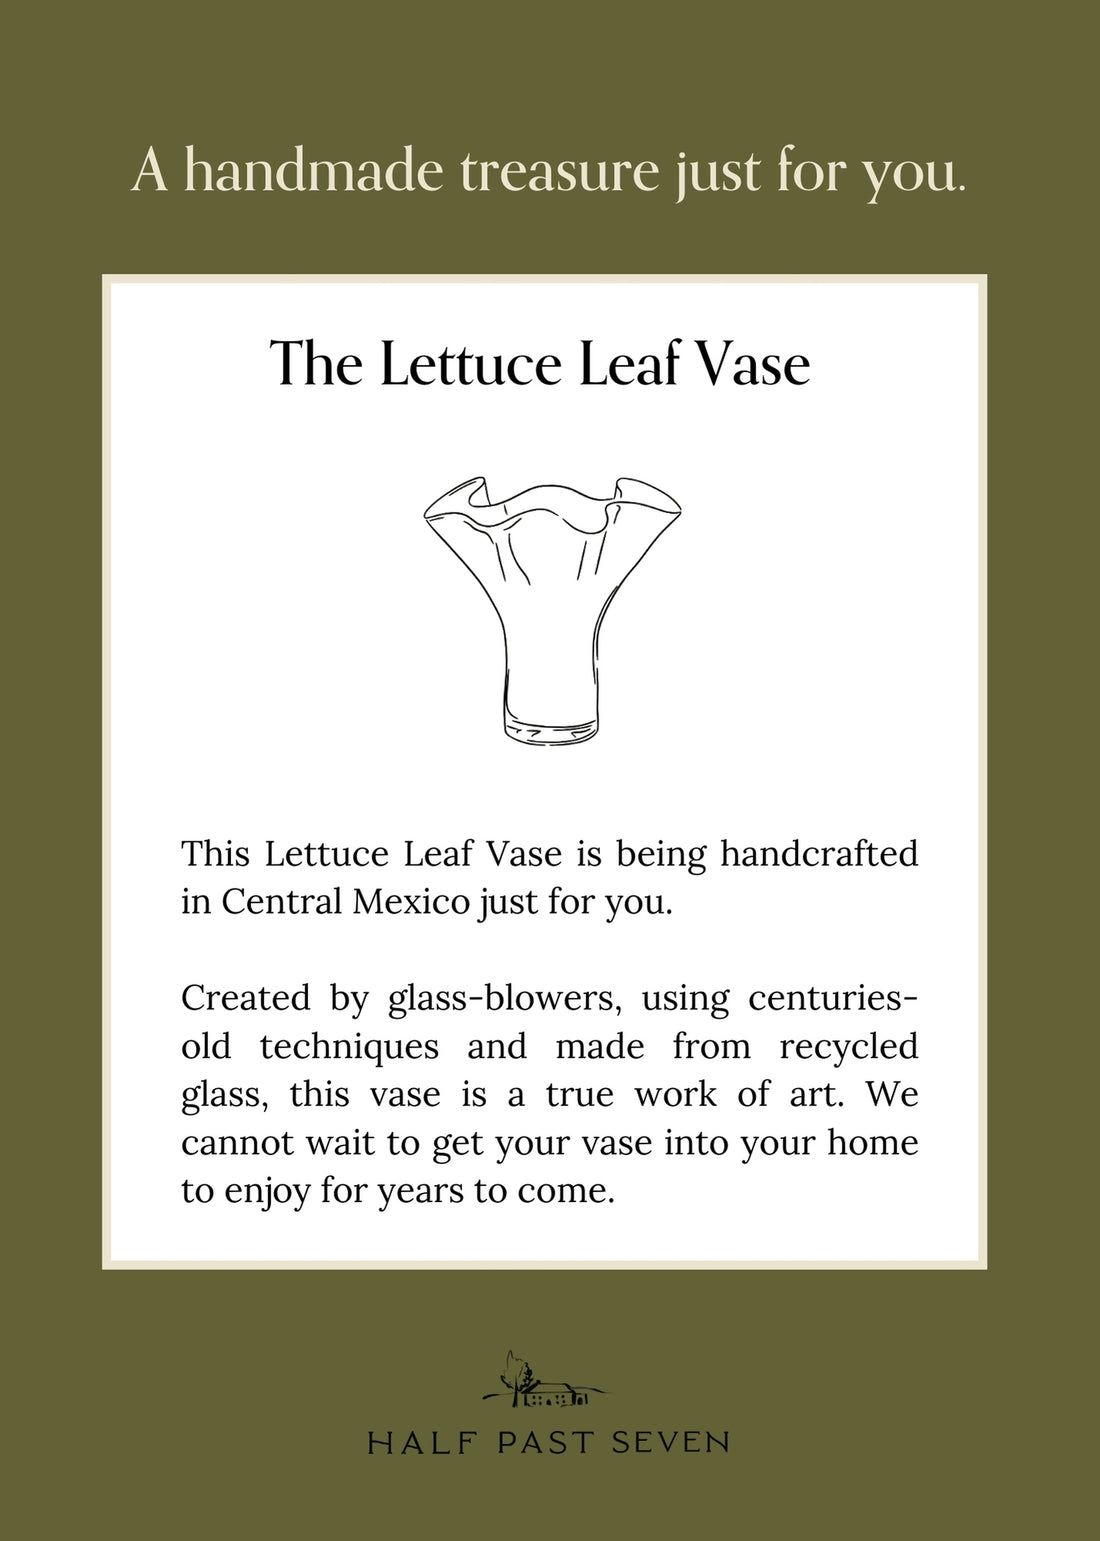 The Original Lettuce Leaf Vase